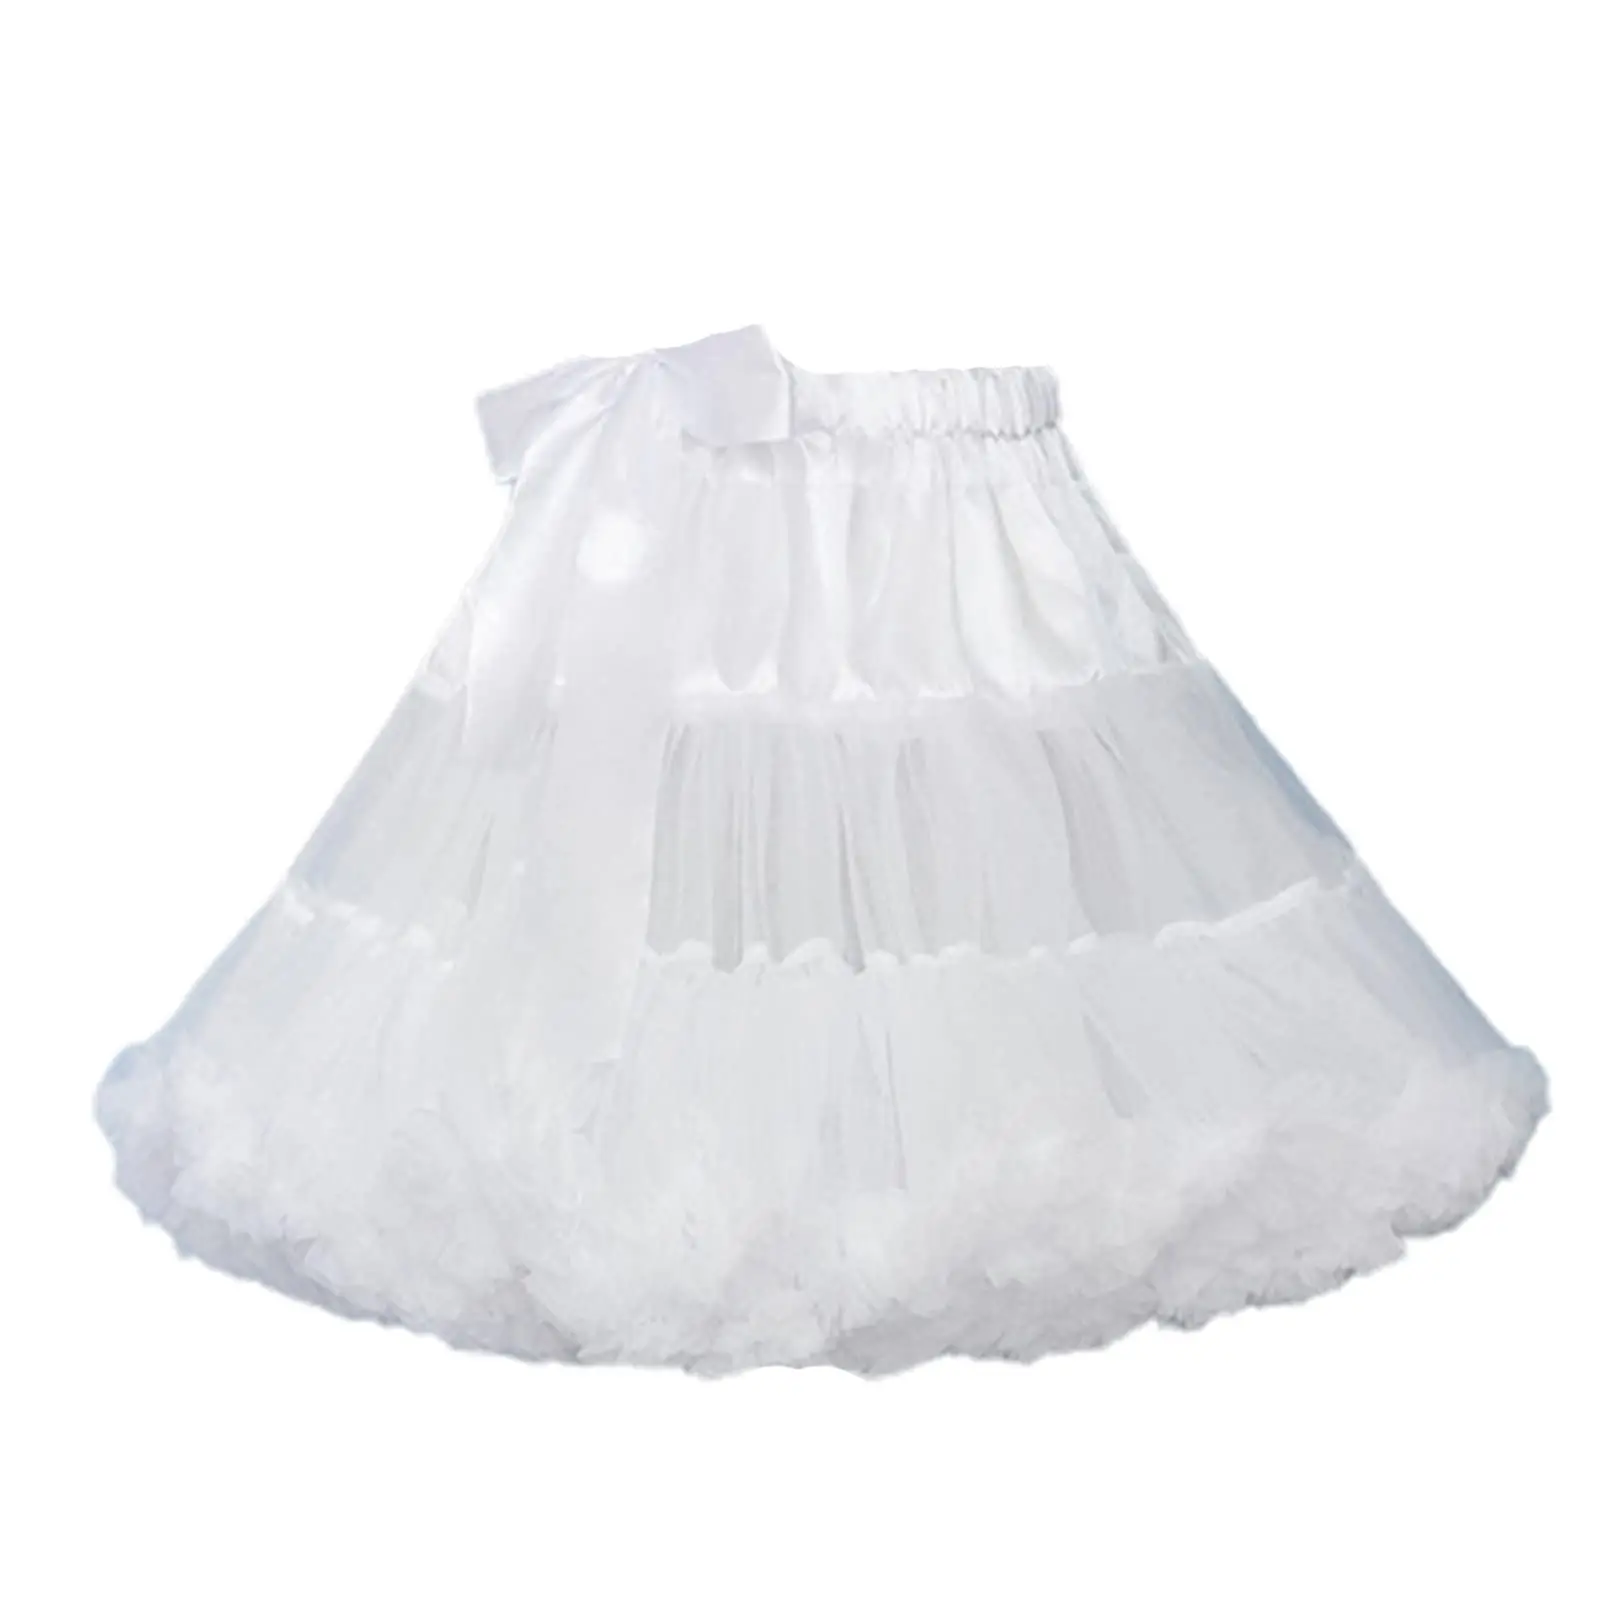 

Women's Crinoline Petticoat Tutu Skirt Soft Fluffy Ball Gown Half Slips 15.75 Inch Underskirt for Wedding Bridal Dress